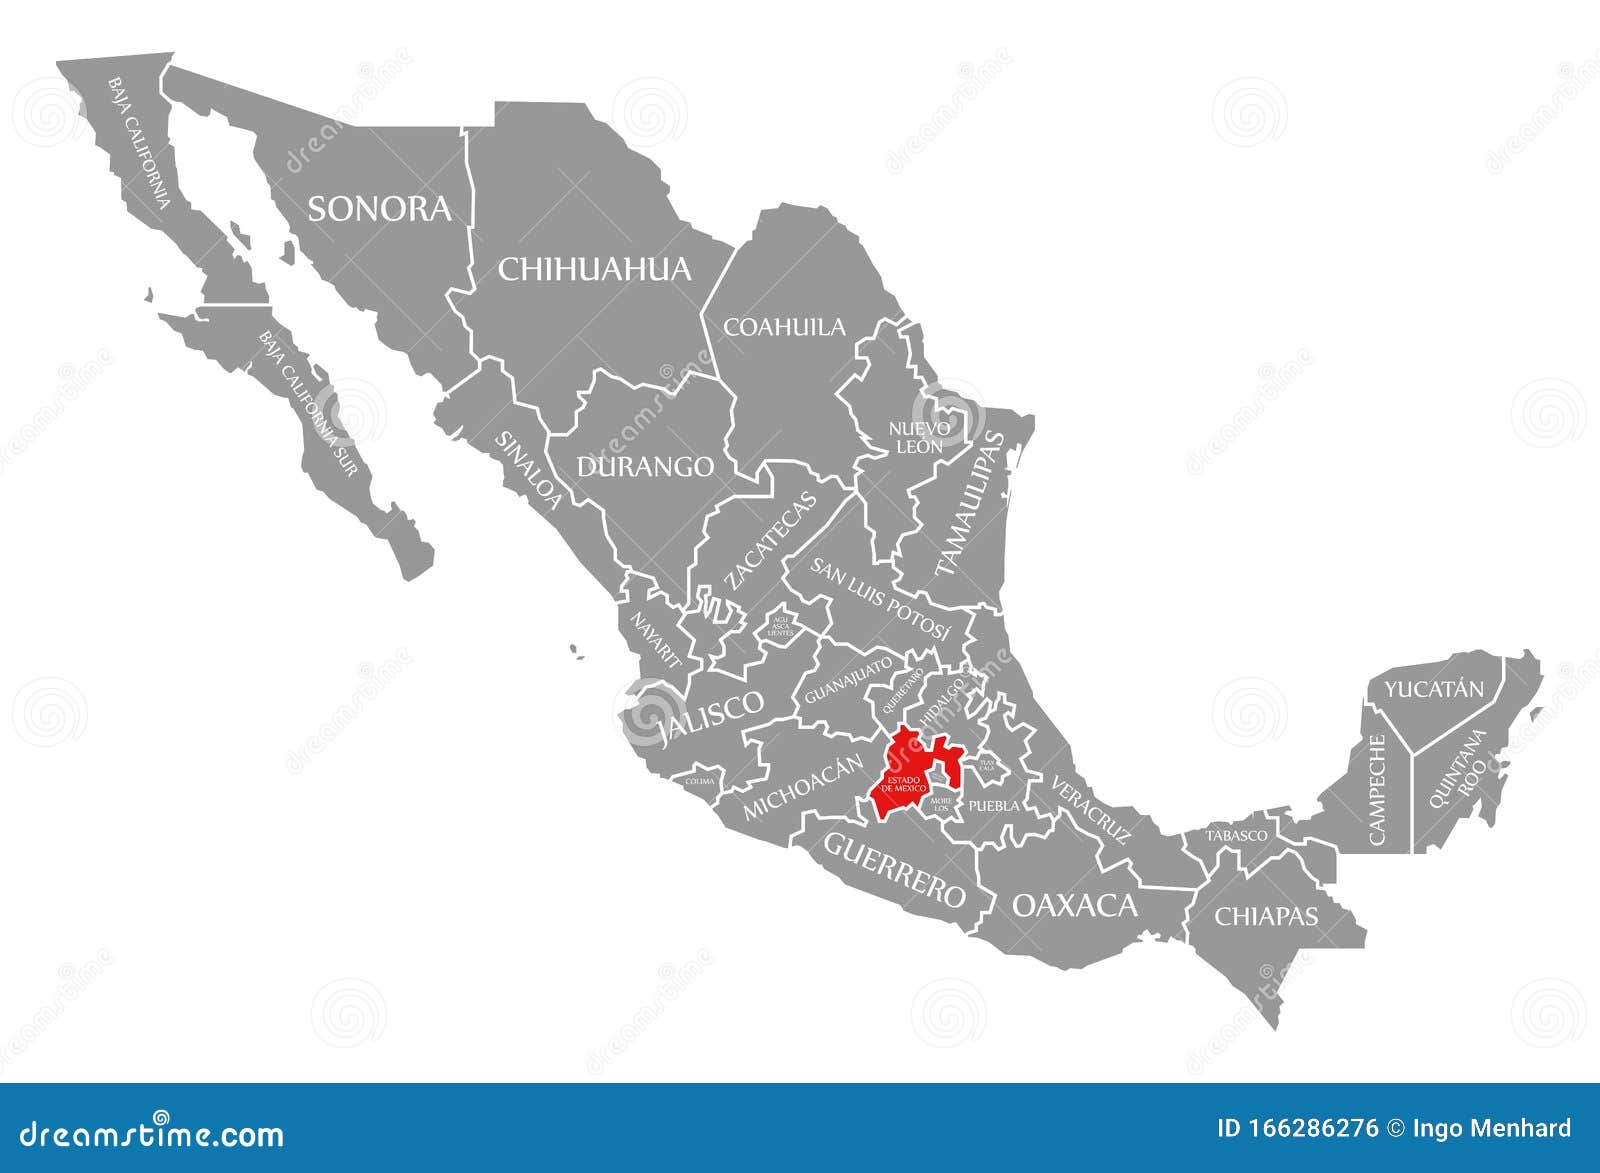 estado de mexico red highlighted in map of mexico